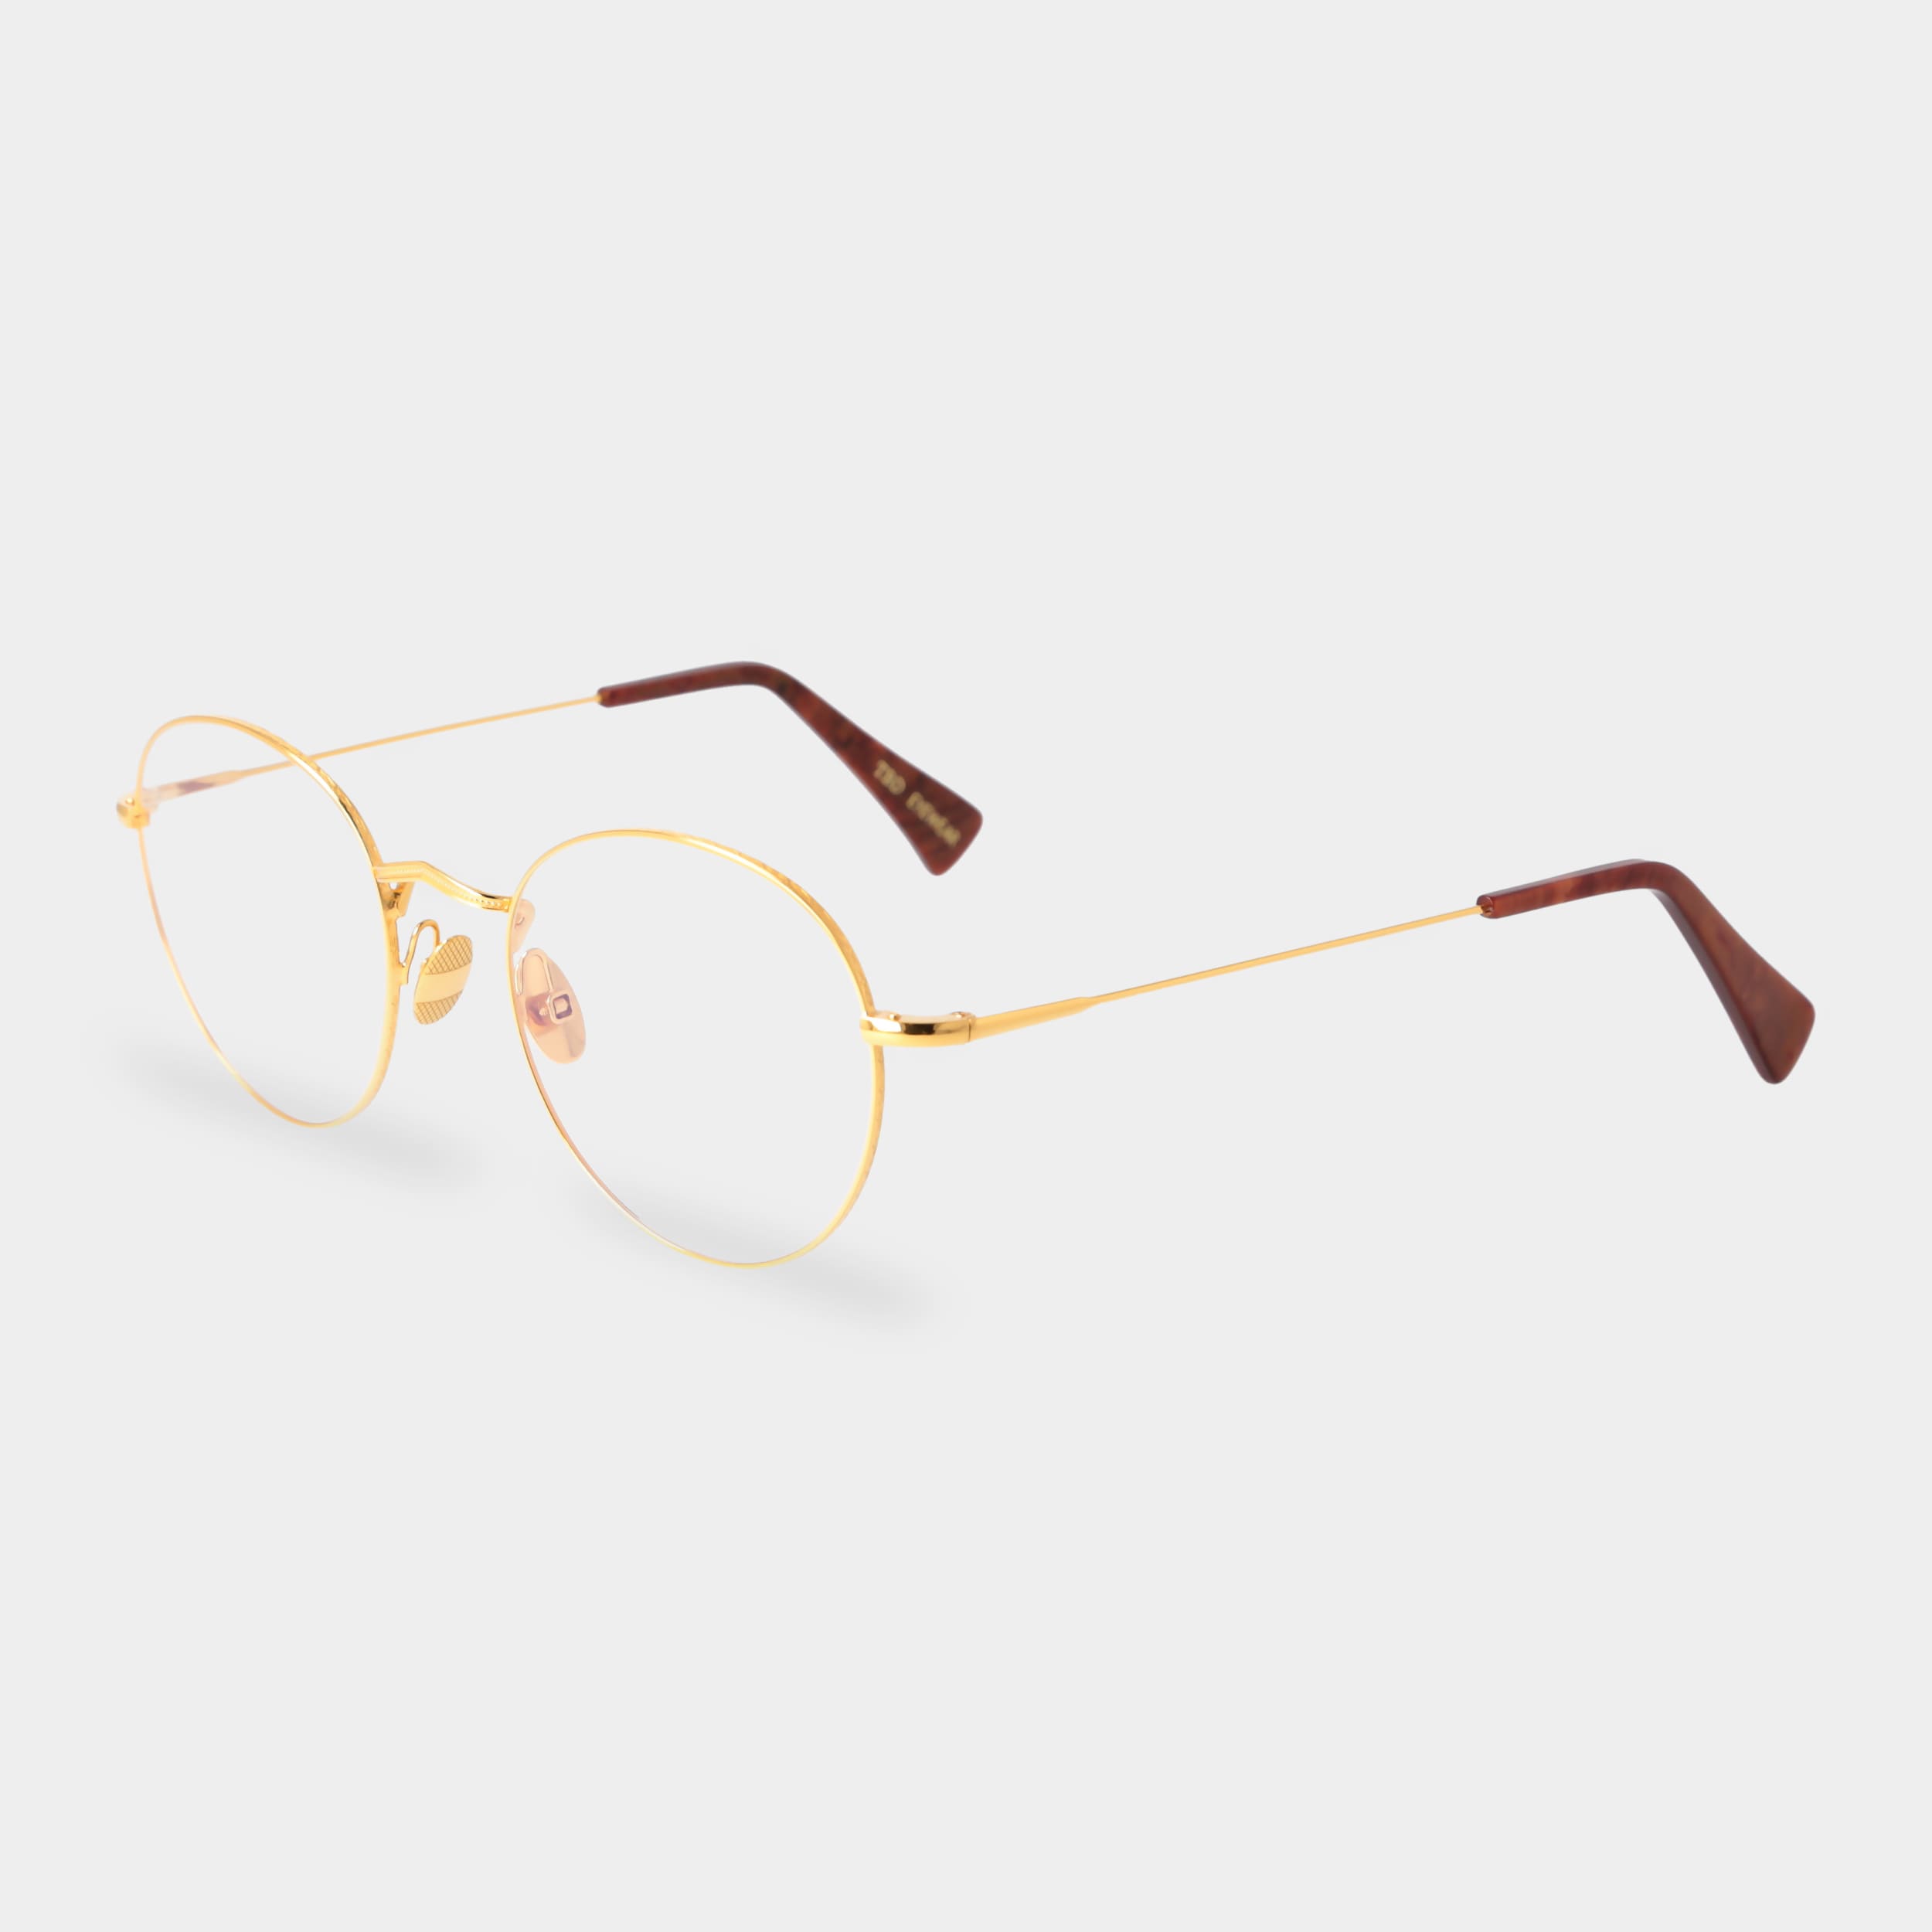 eyeglasses-vicuna-k-gold-optical-tbd-eyewear-total